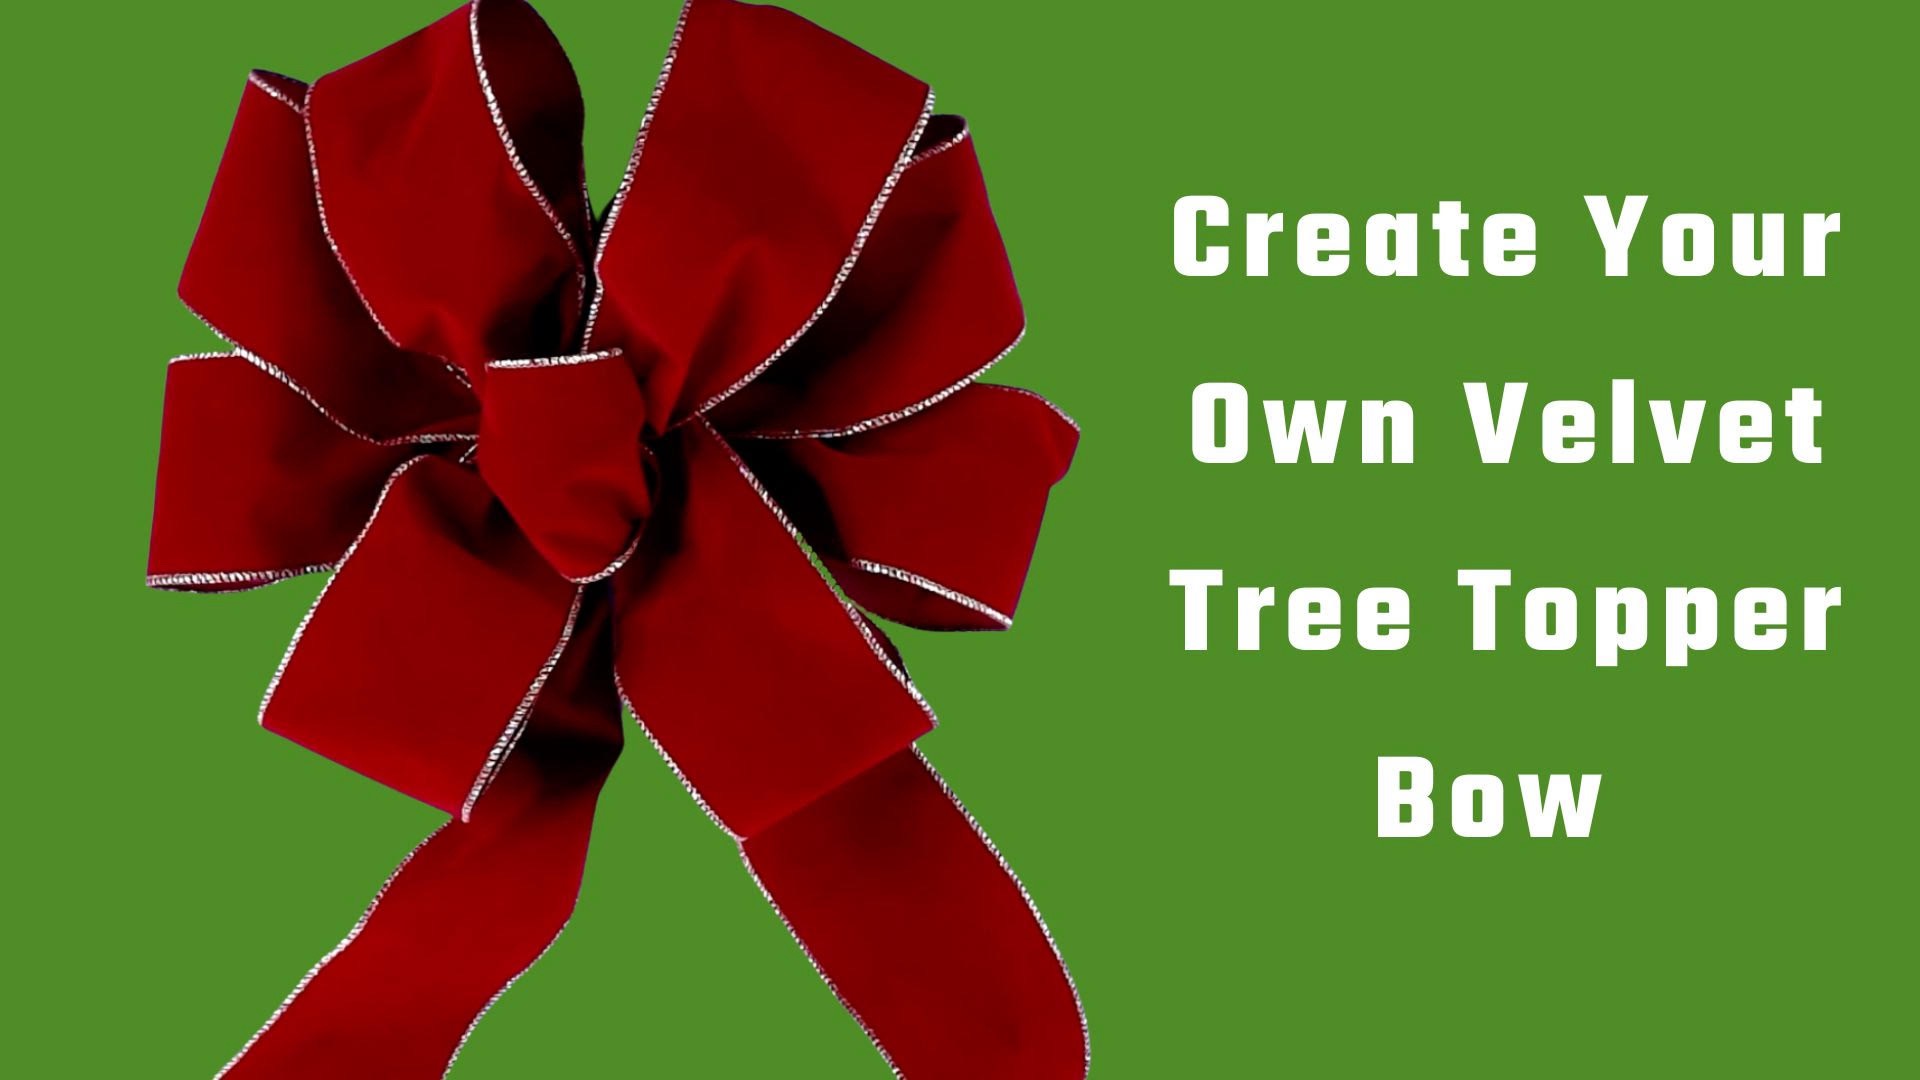 How To Make The Easiest Bowdabra Velvet Tree Topper Bow : Bowdabra